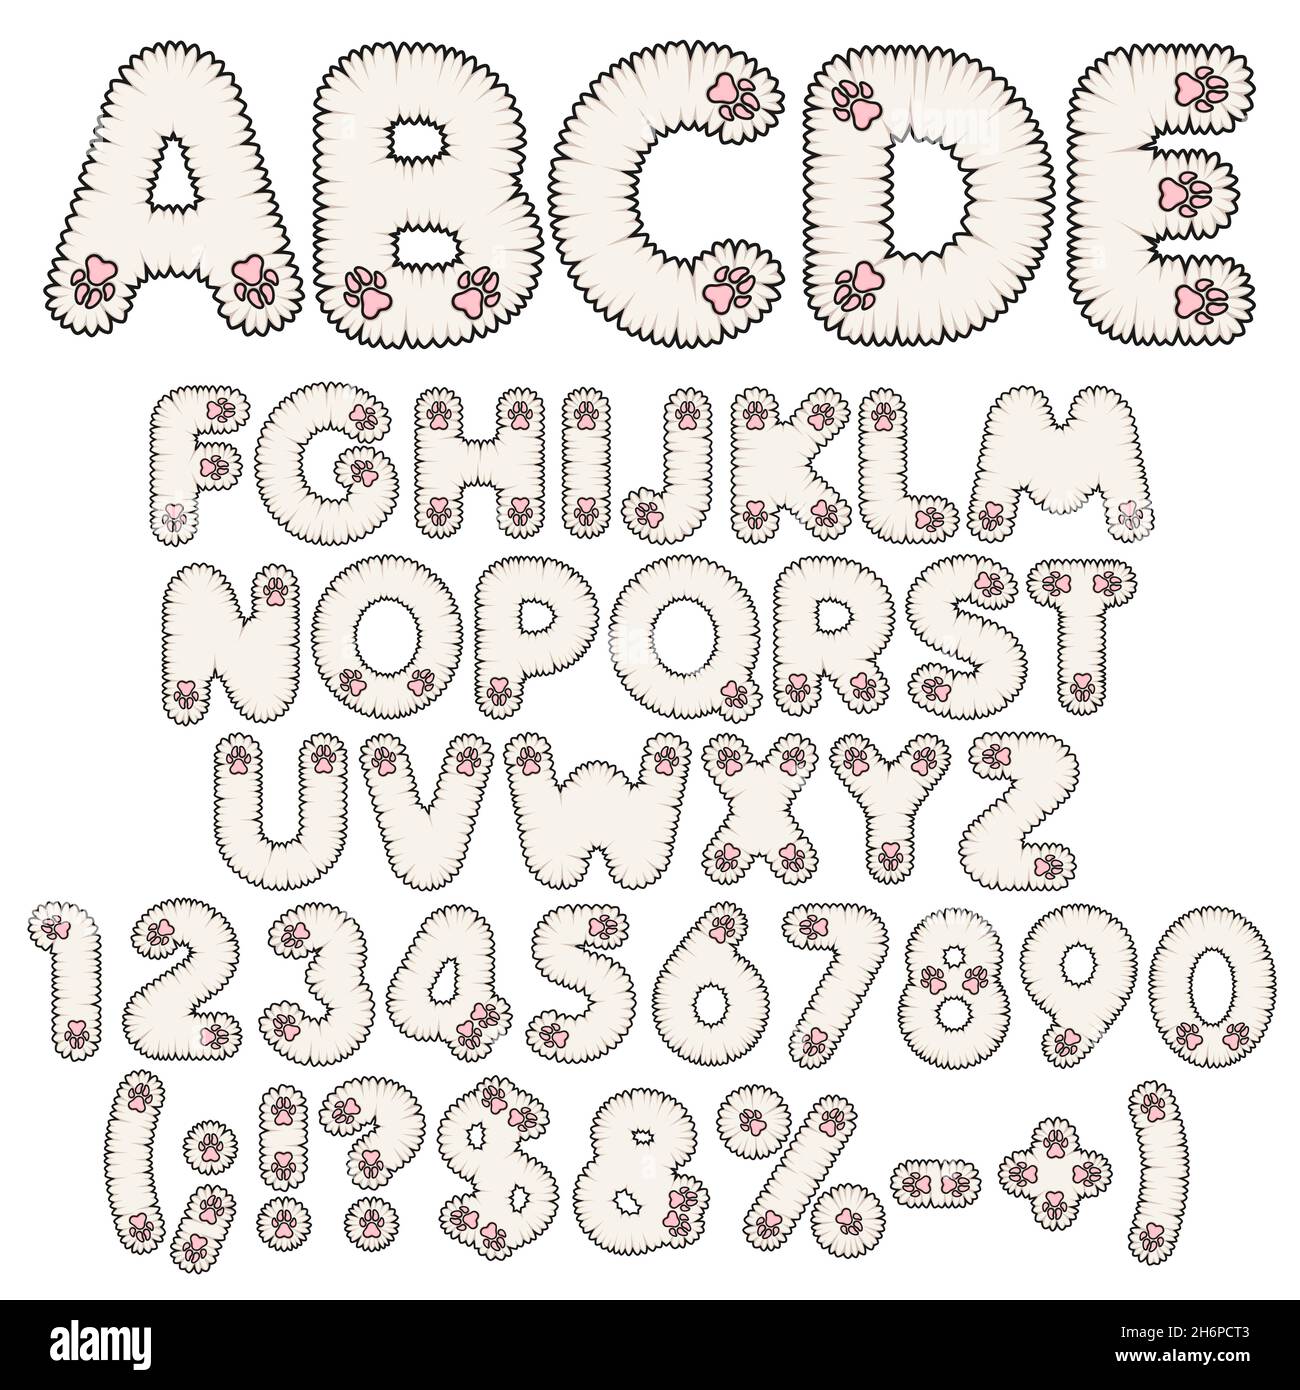 Flauschiges weißes Alphabet, Buchstaben, Zahlen und Schilder mit rosa Pfoten. Satz isolierter Vektorobjekte auf weißem Hintergrund. Stock Vektor